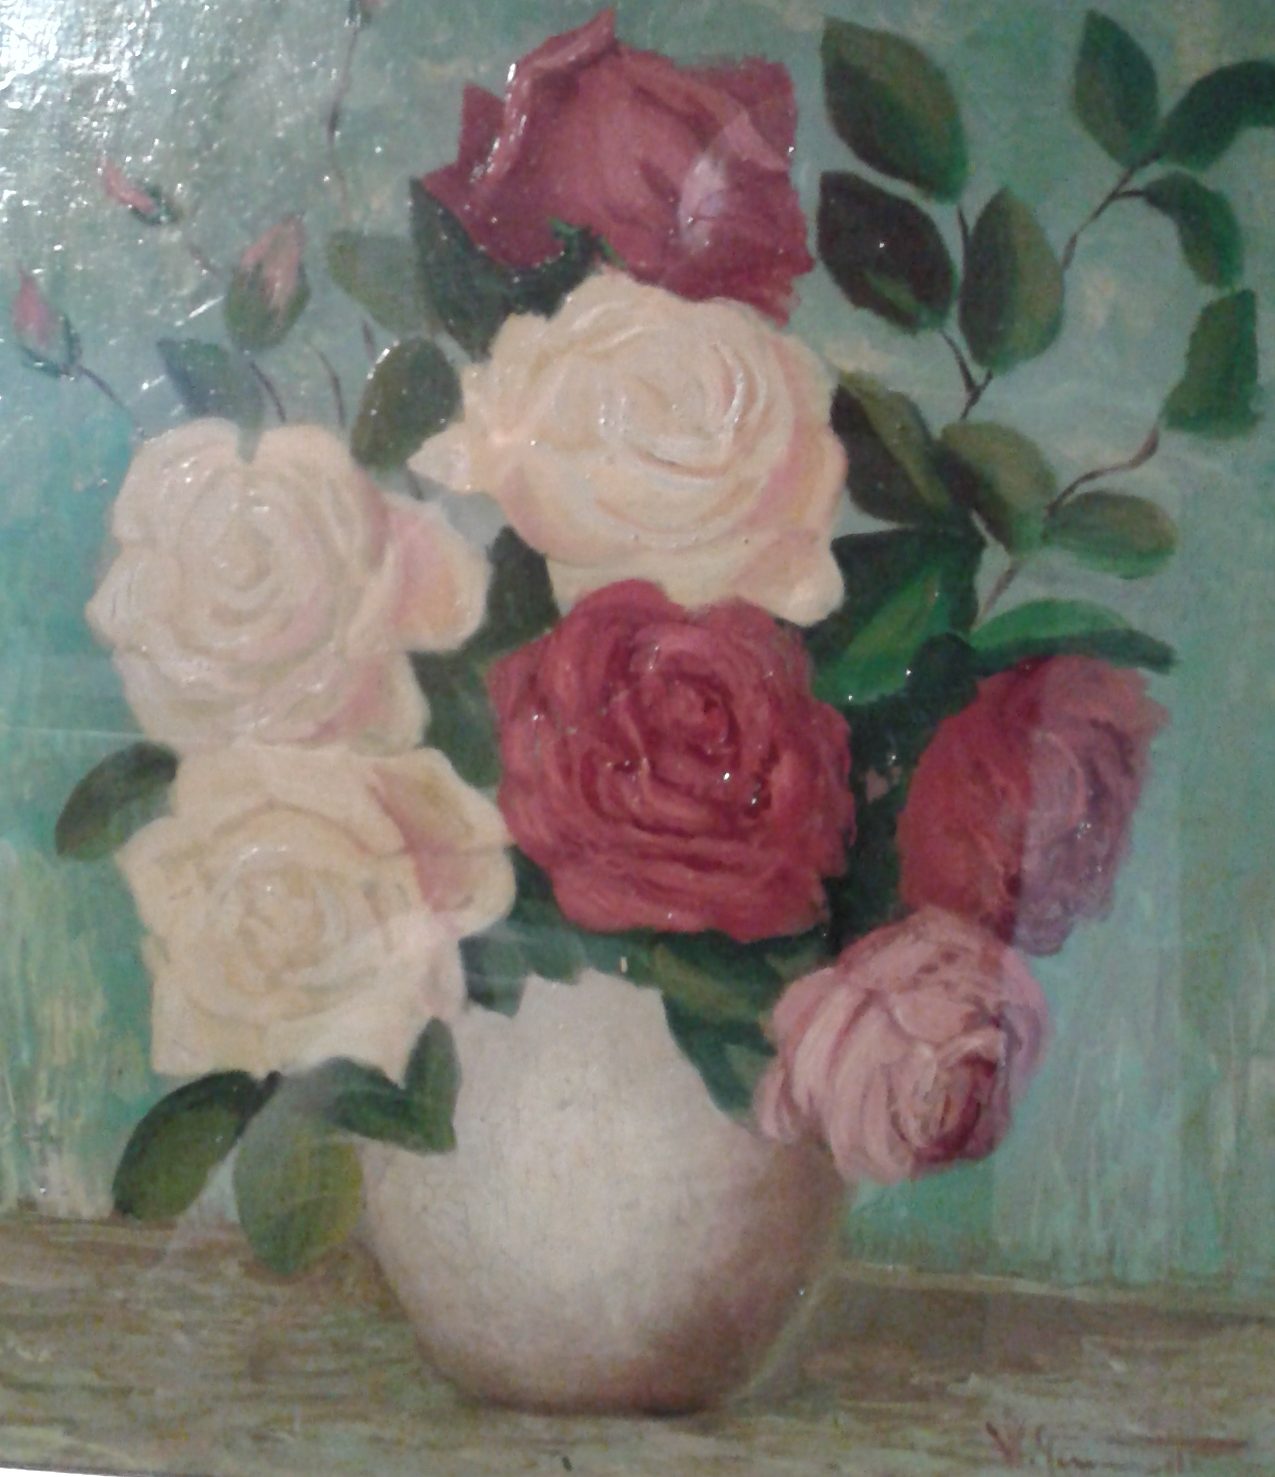 William Girometti, Vaso di fiori, 1957?, collezione privata